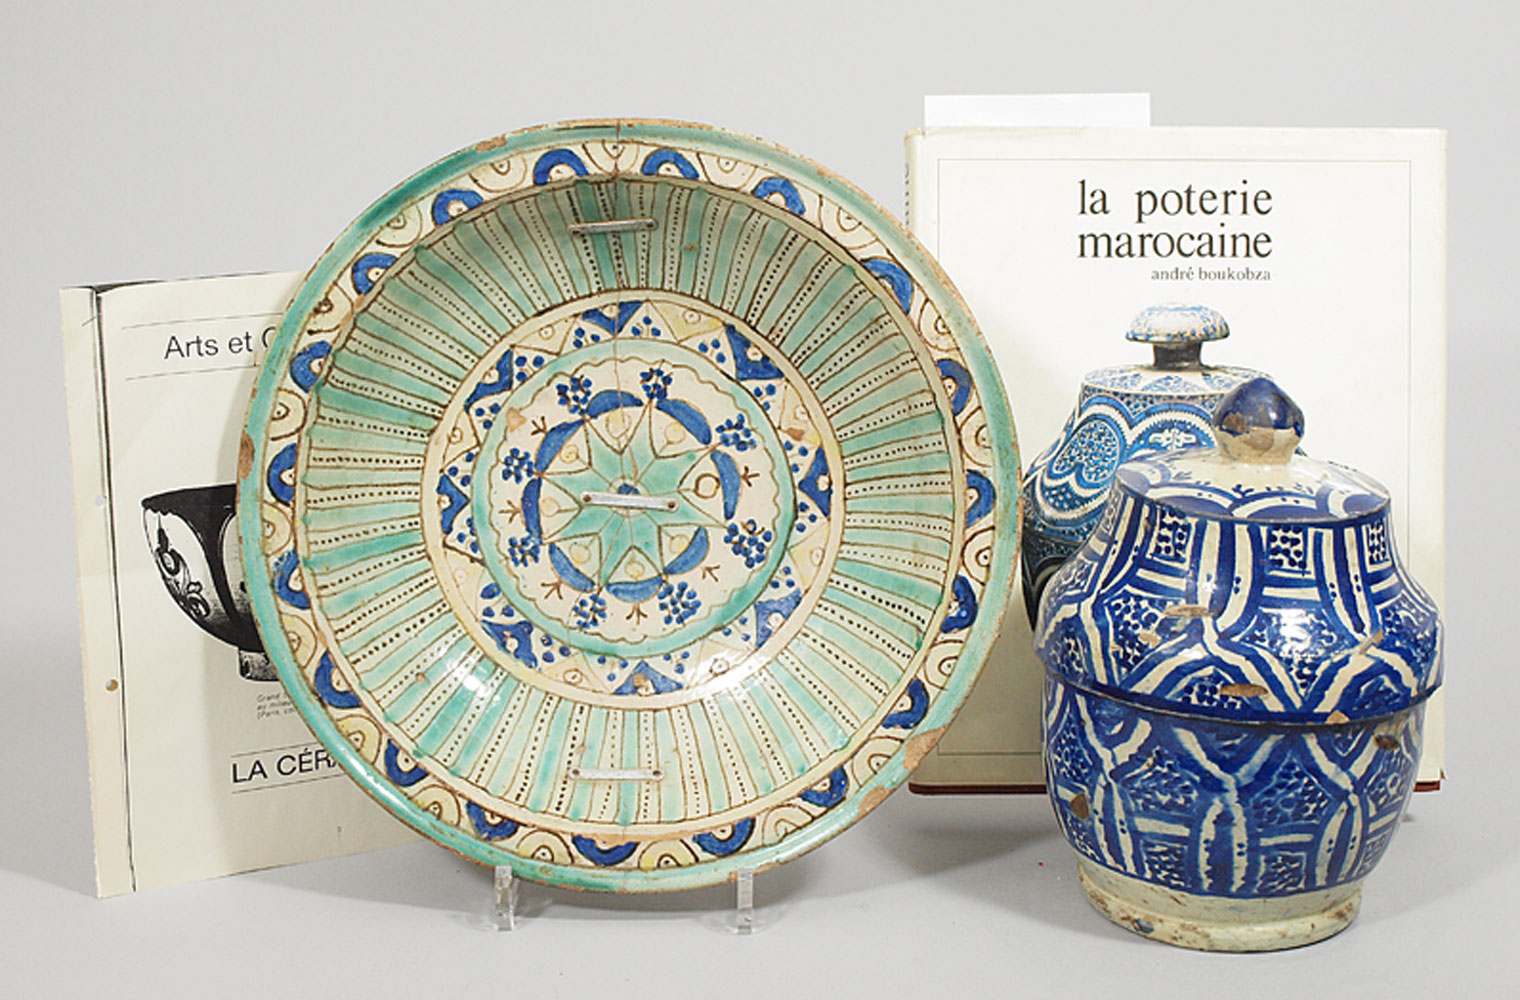 Buttergefäß "Gobbana" und Schale.Gebrannte Tonware mit blauer bzw. bunter Bemalung. a) Deckeldose